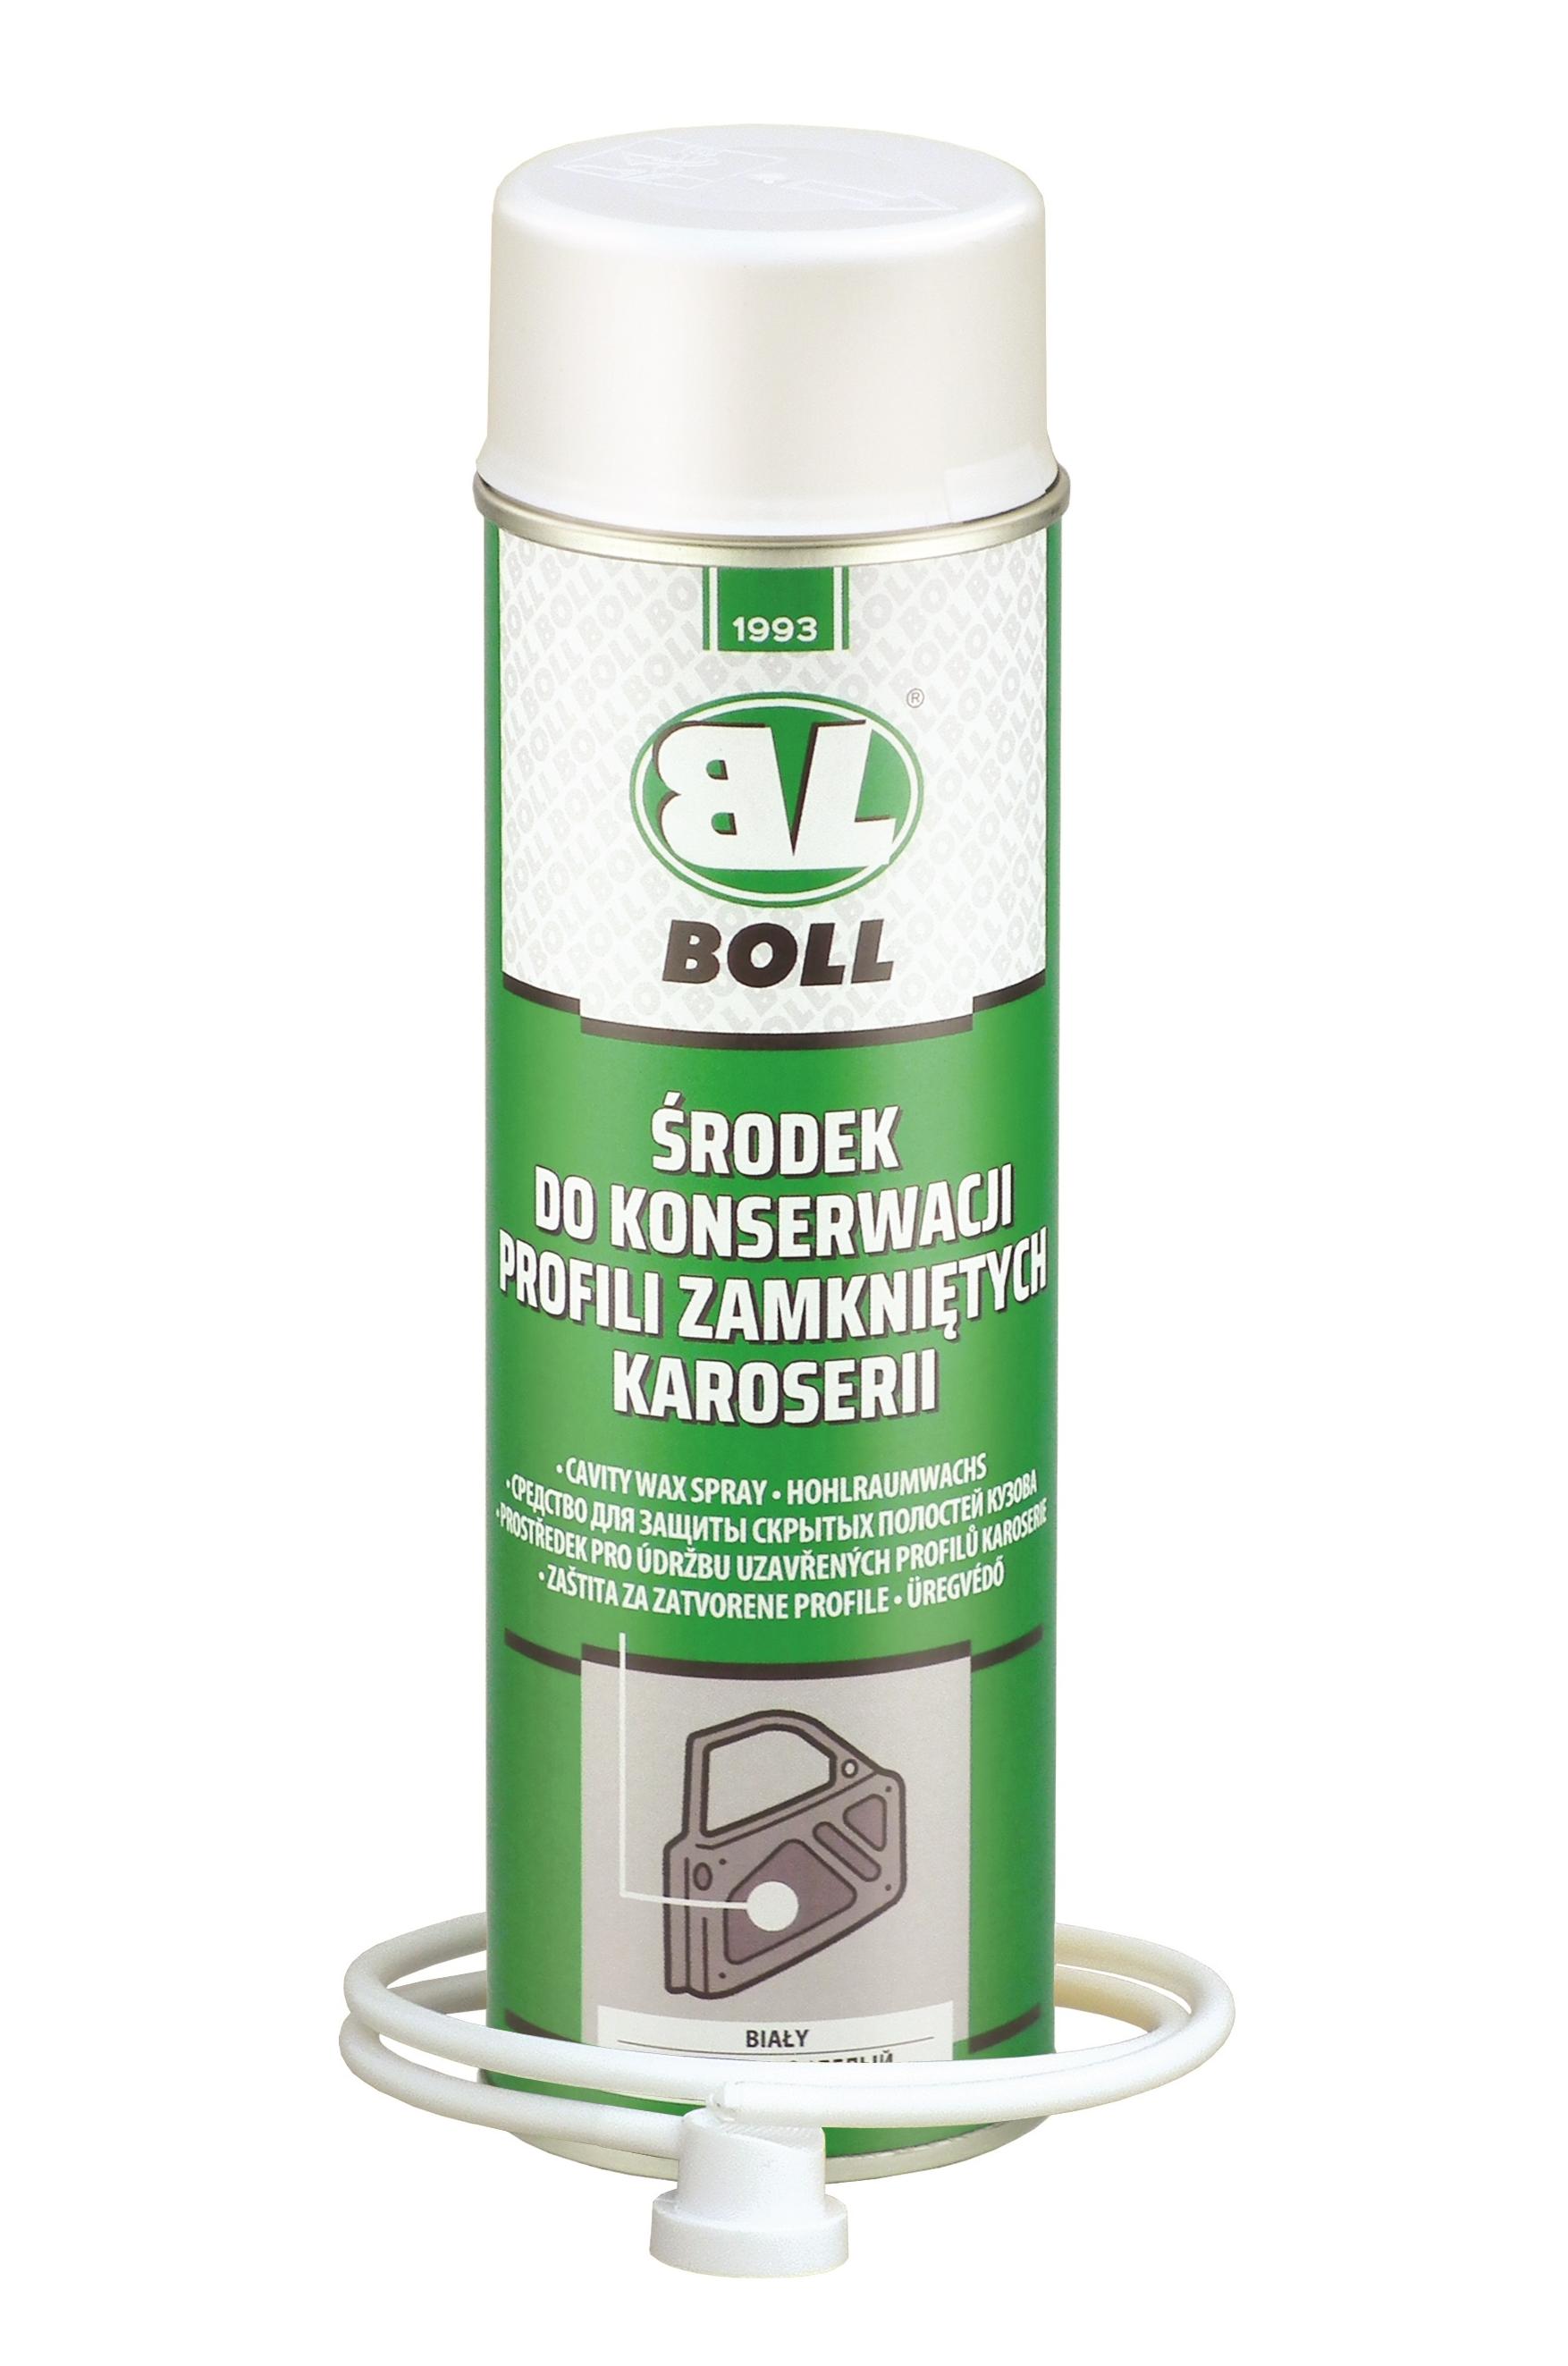 Boll 0010102 Spraydose Hohlraumwachs weiß 500 ml  Sprühdose versiegeln  schützen konservieren 0,5 L